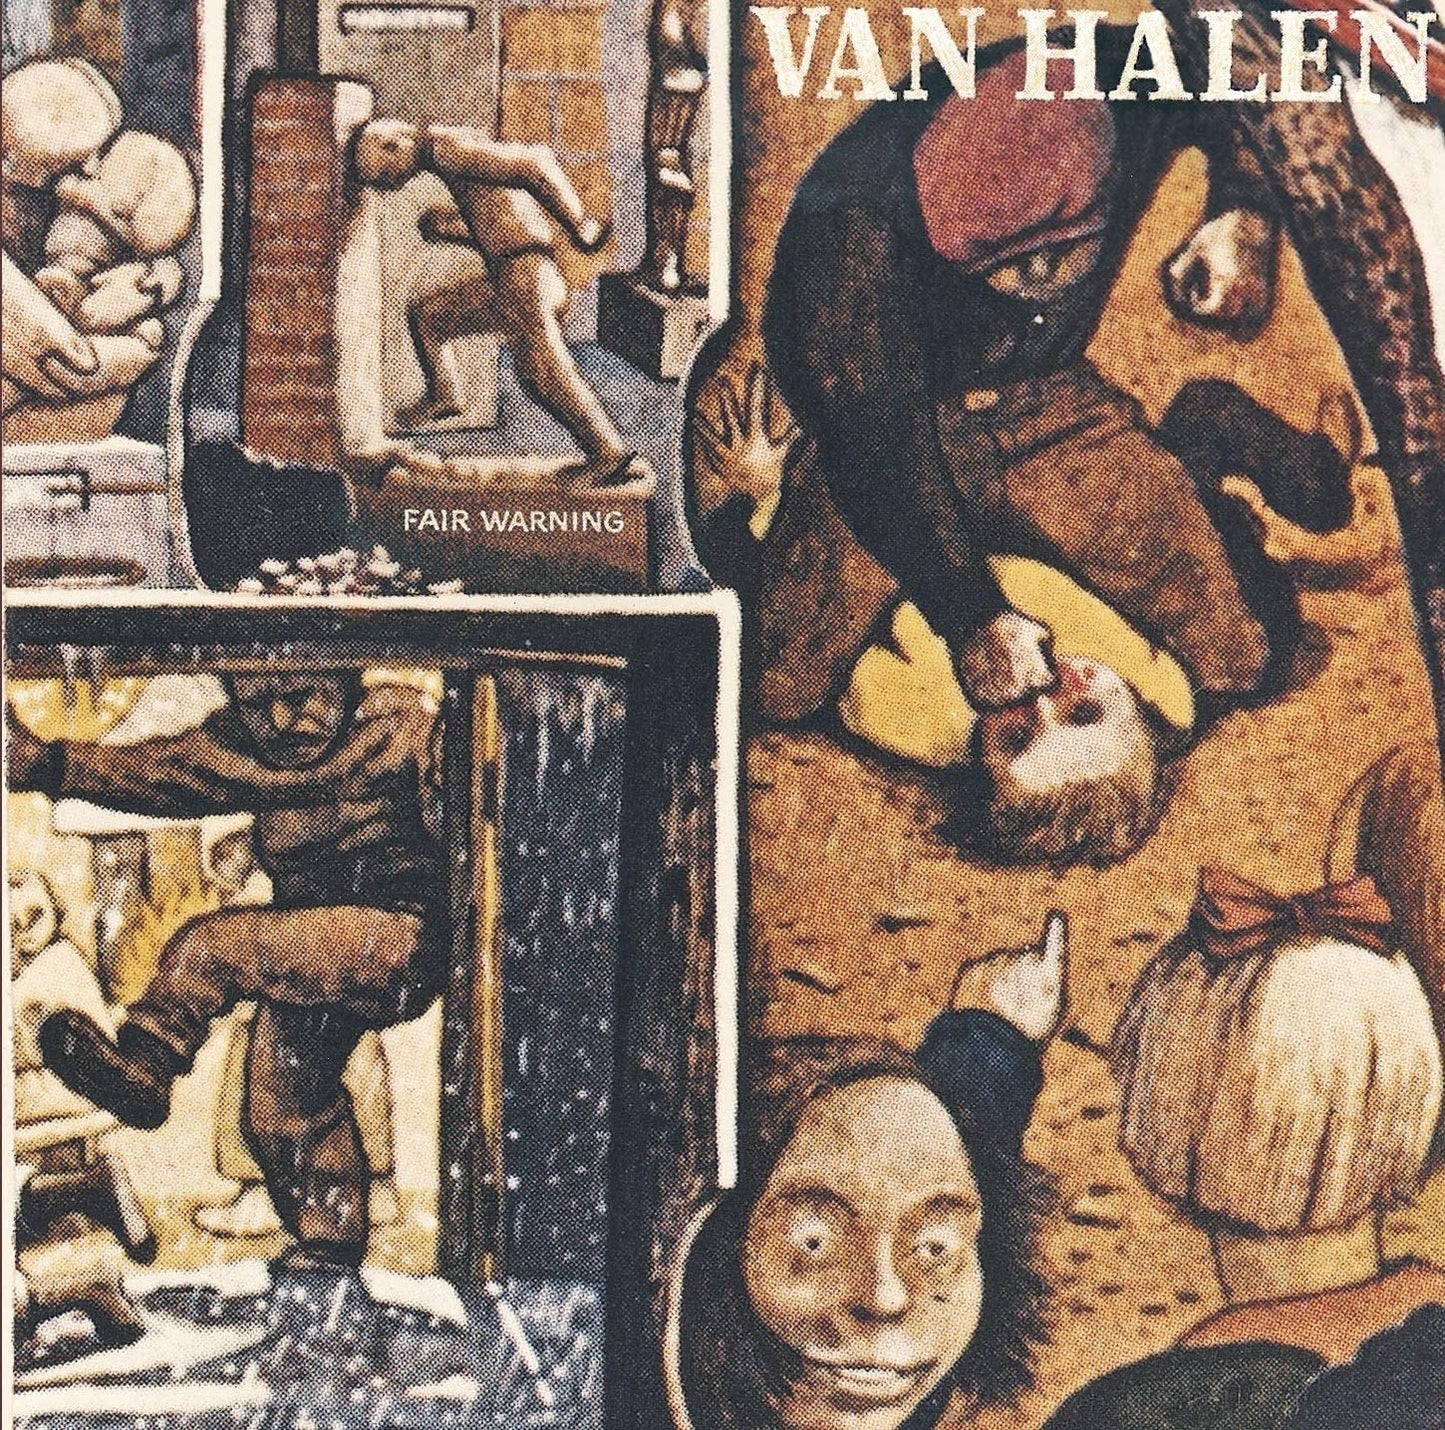 LP - Van Halen - Fair Warning